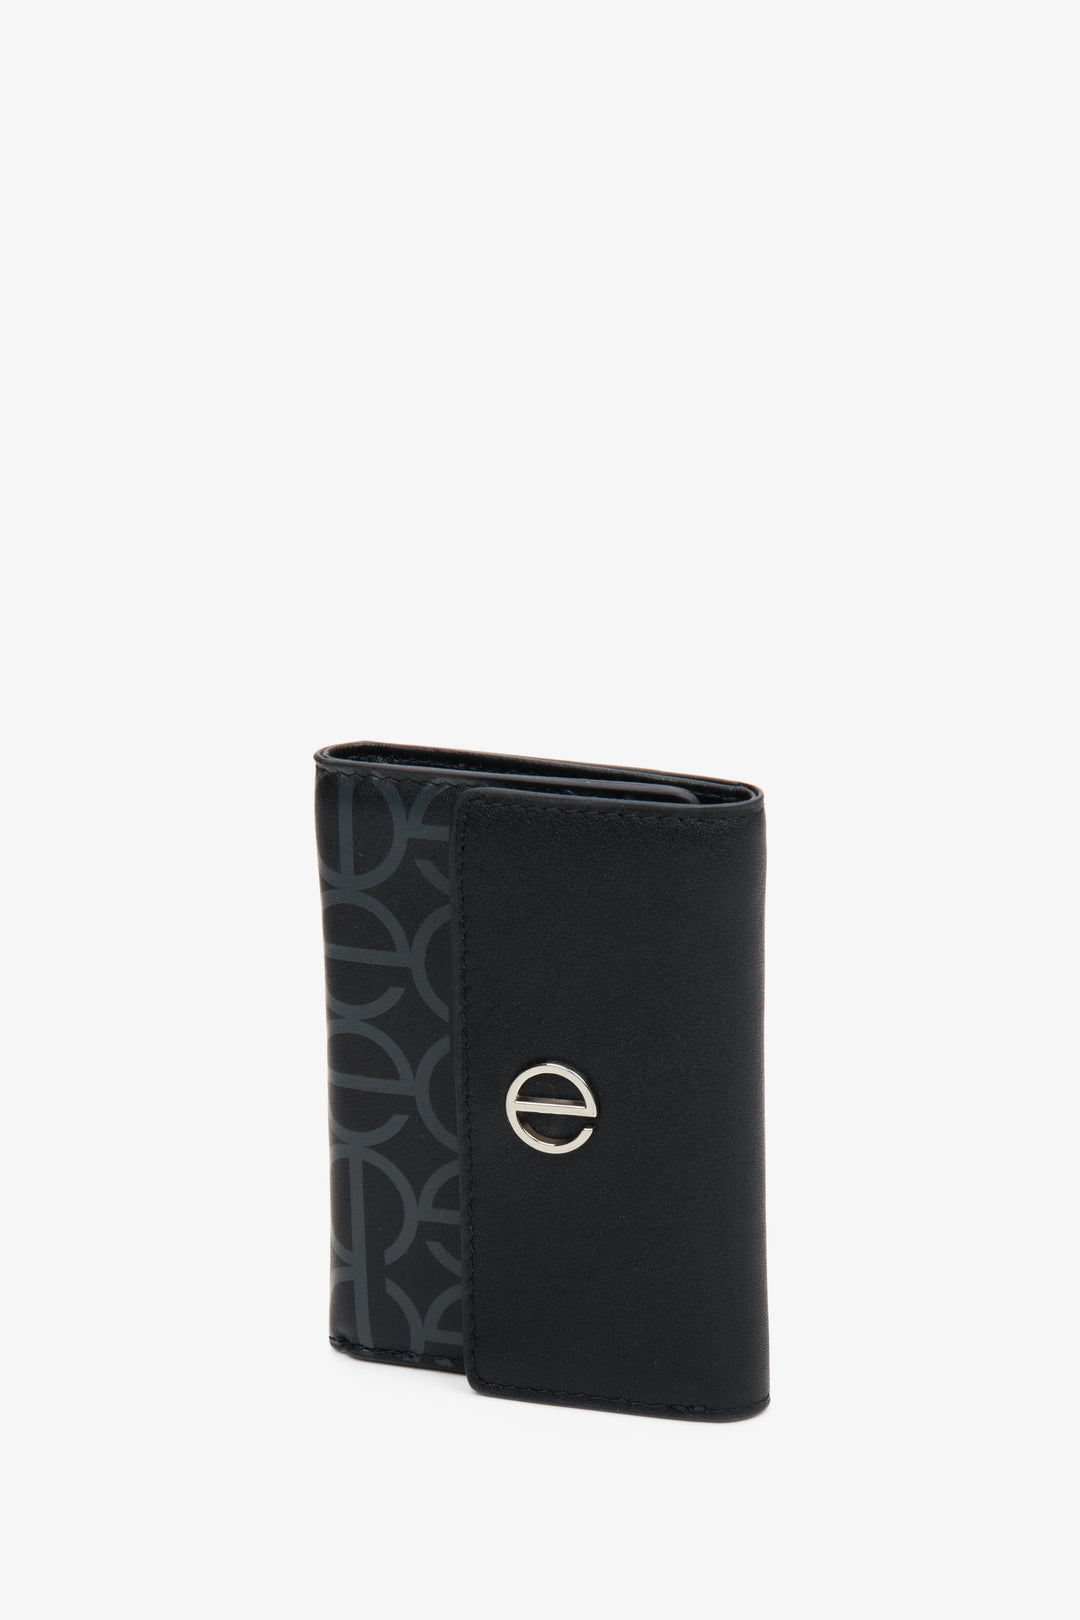 Czarny, skórzany portfel damski średniej wielkości marki Estro.